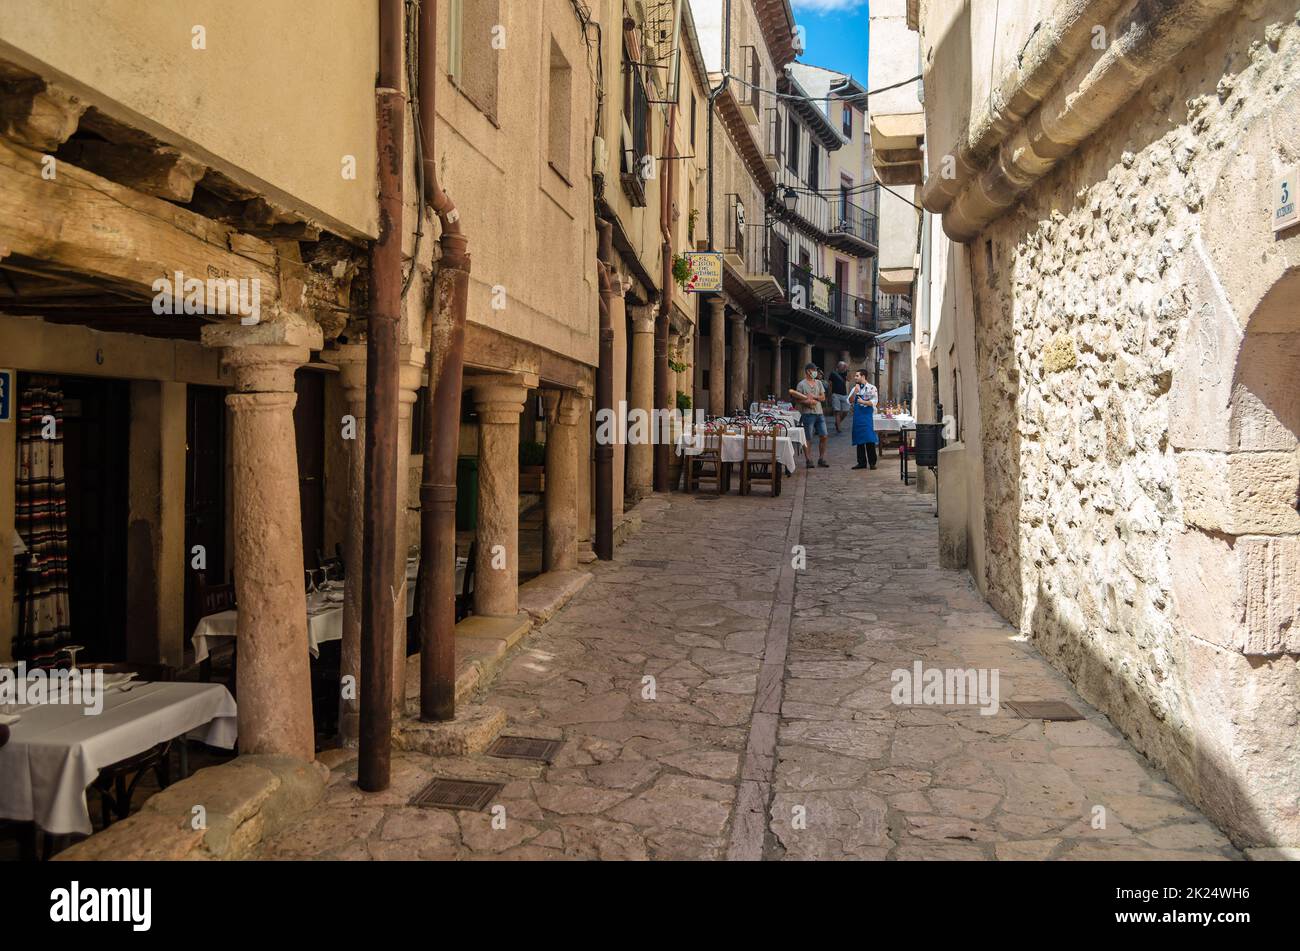 SEPULVEDA, SPANIEN - 12. SEPTEMBER 2021: Schmale Straße mit Restaurants und Terrassen, die für die Mittagszeit in der mittelalterlichen Stadt Sepulveda, Segovia p Stockfoto